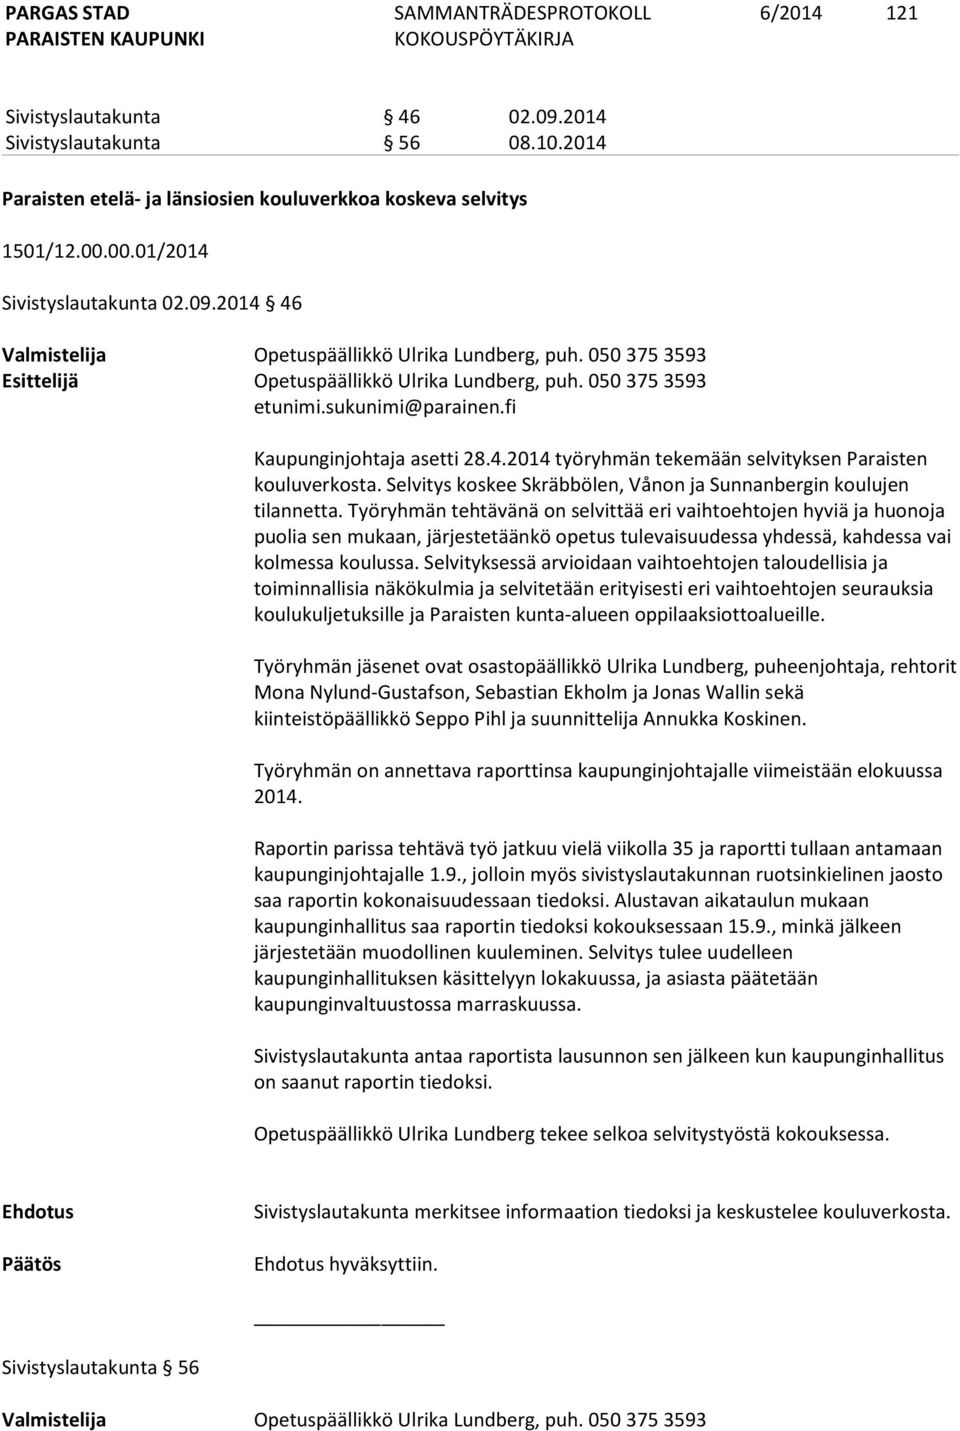 Selvitys koskee Skräbbölen, Vånon ja Sunnanbergin koulujen tilannetta.